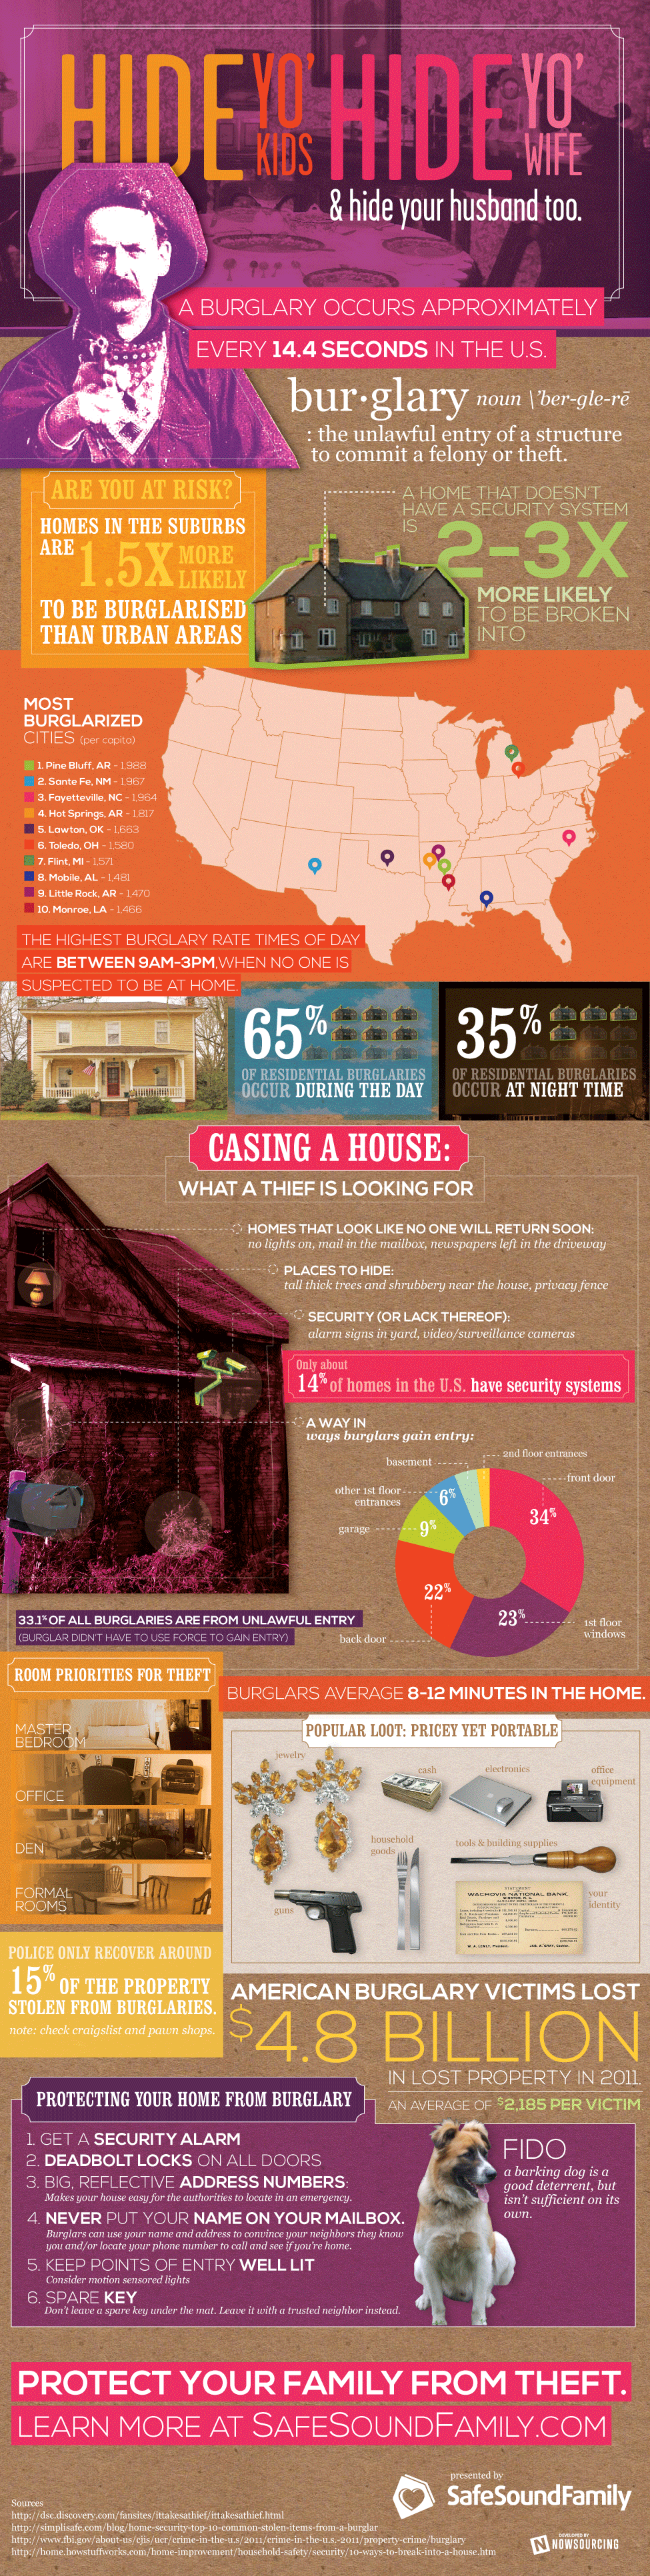 home-burglary-infographic